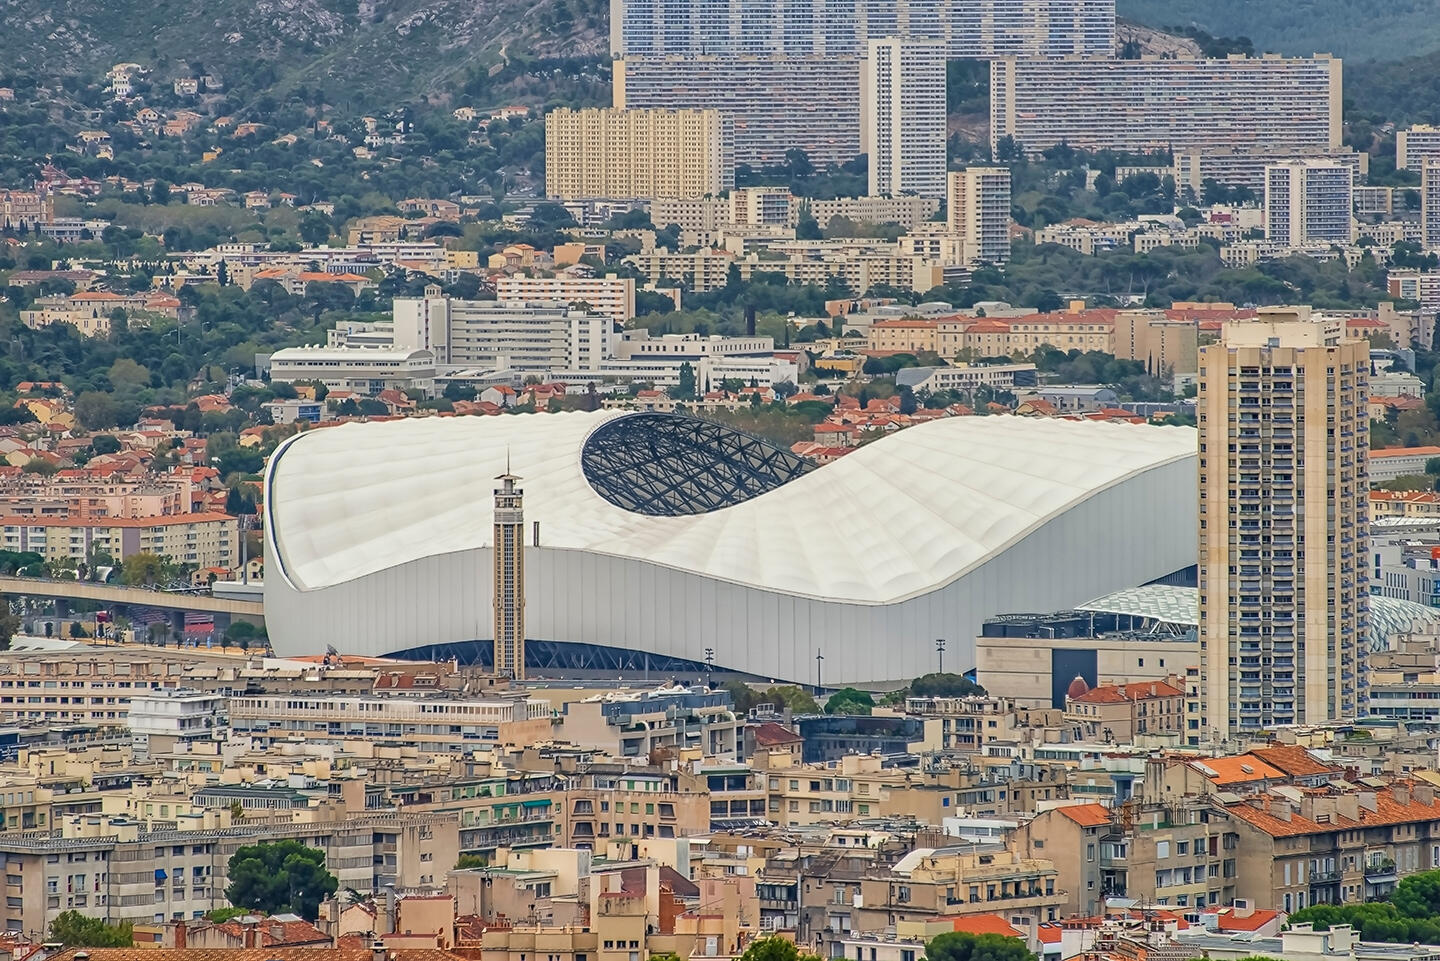 Vue aérienne du Stade Vélodrome à Marseille, avec sa structure emblématique en forme de vague blanche, entouré de l'architecture urbaine dense de la ville et des collines en arrière-plan, suggérant une expérience immersive pour les visiteurs séjournant dans des appart'hôtels locaux.